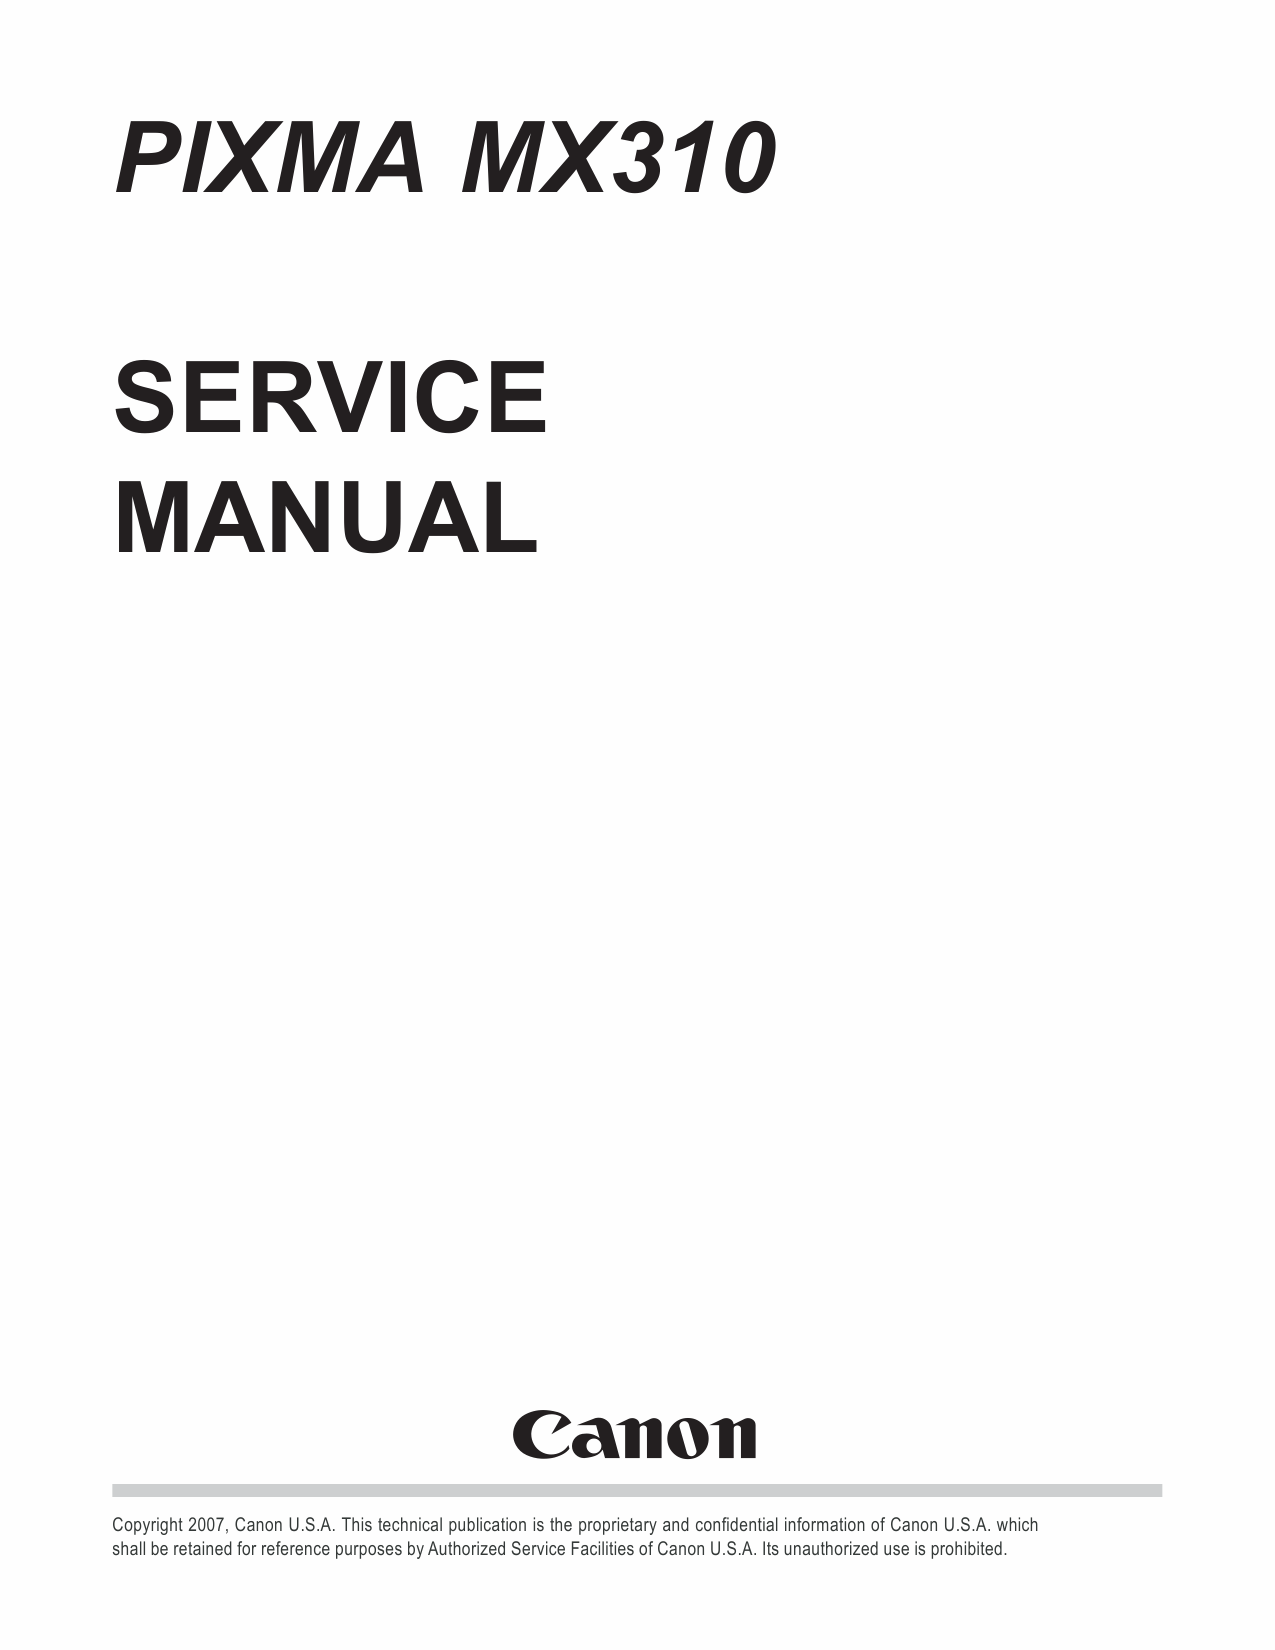 Canon PIXMA MX310 Service Manual-1